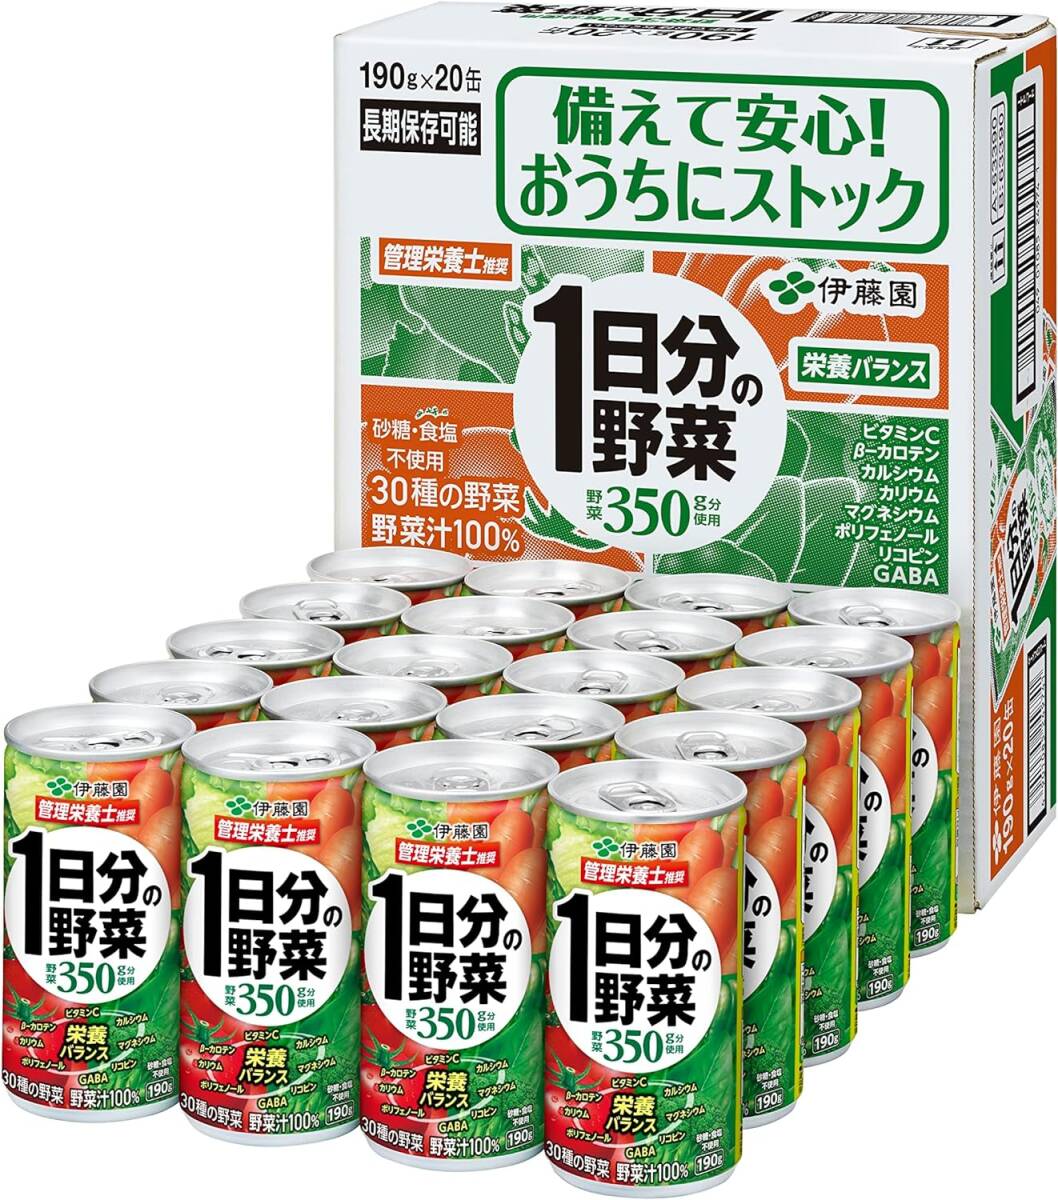 Itoen 1 день овощной банки 190 г х 20 бутылок